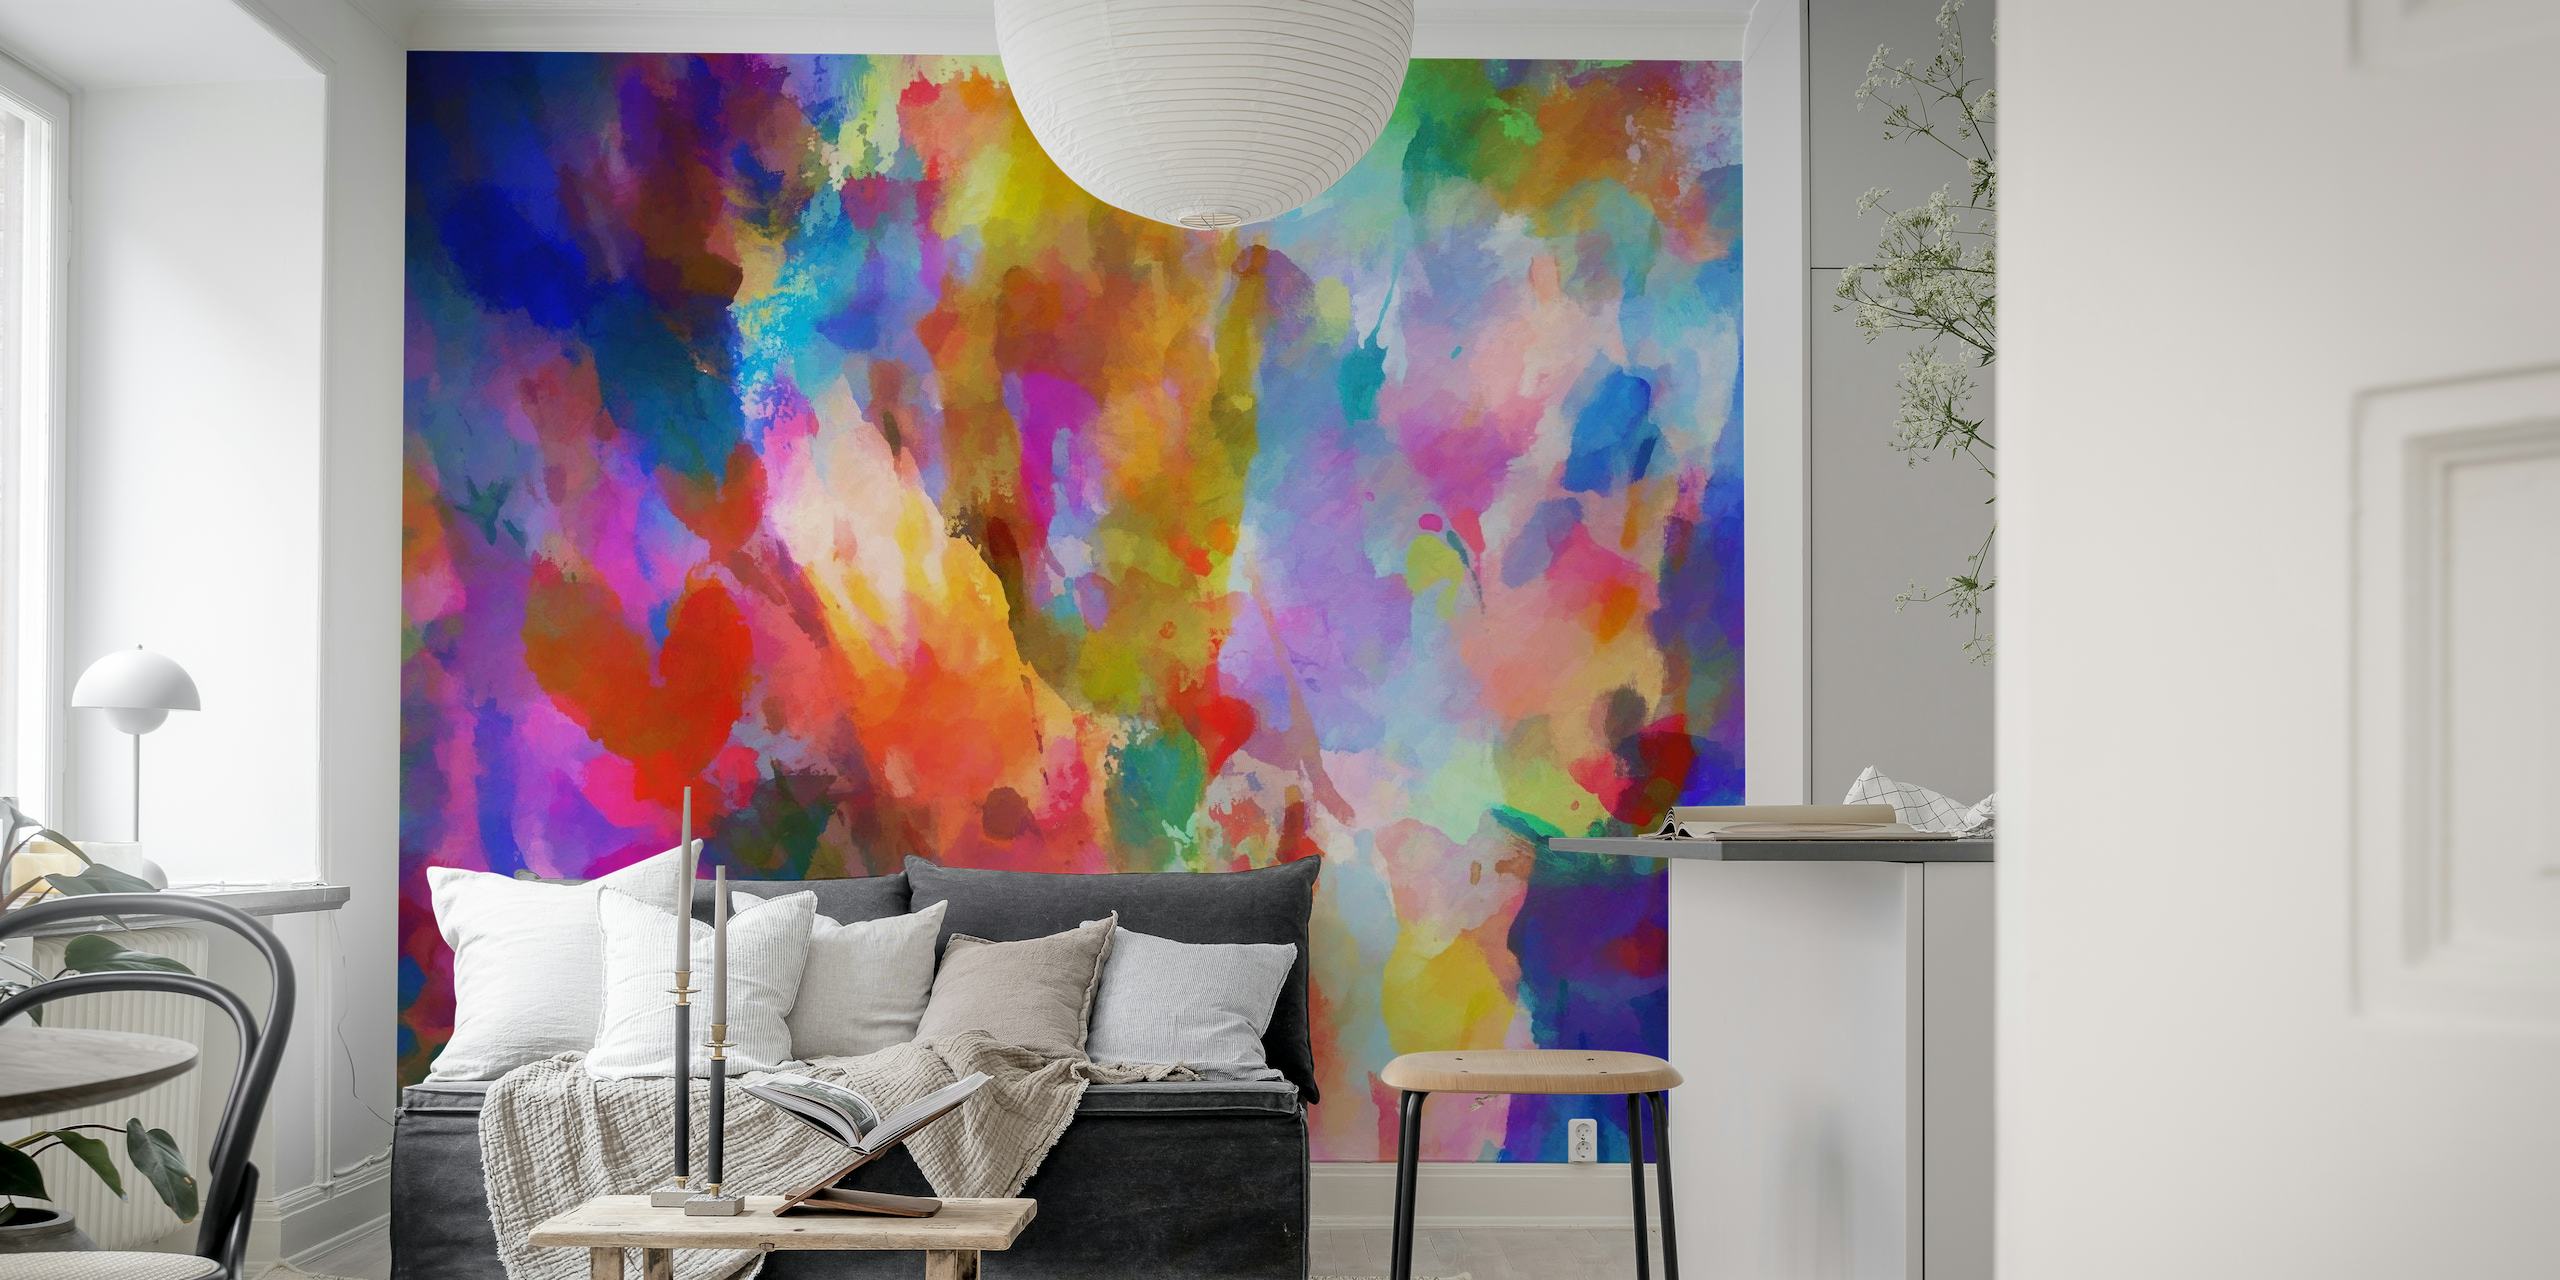 Farbenfrohe abstrakte Kunstwandmalerei mit einem lebendigen Spektrum gemischter Farbtöne